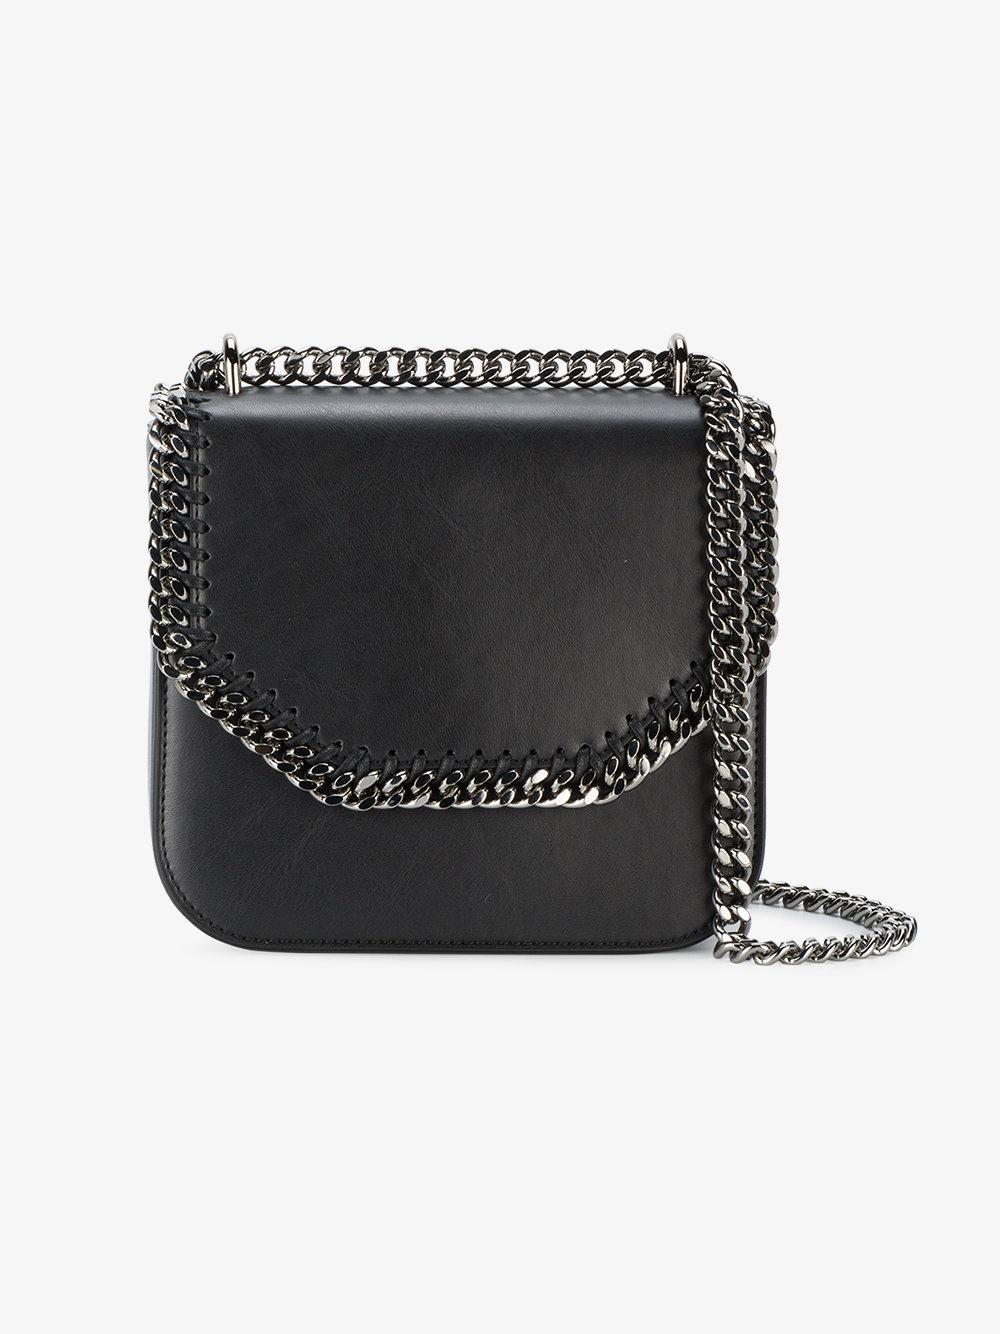 Stella McCartney Leather Medium Falabella Box Shoulder Bag in 